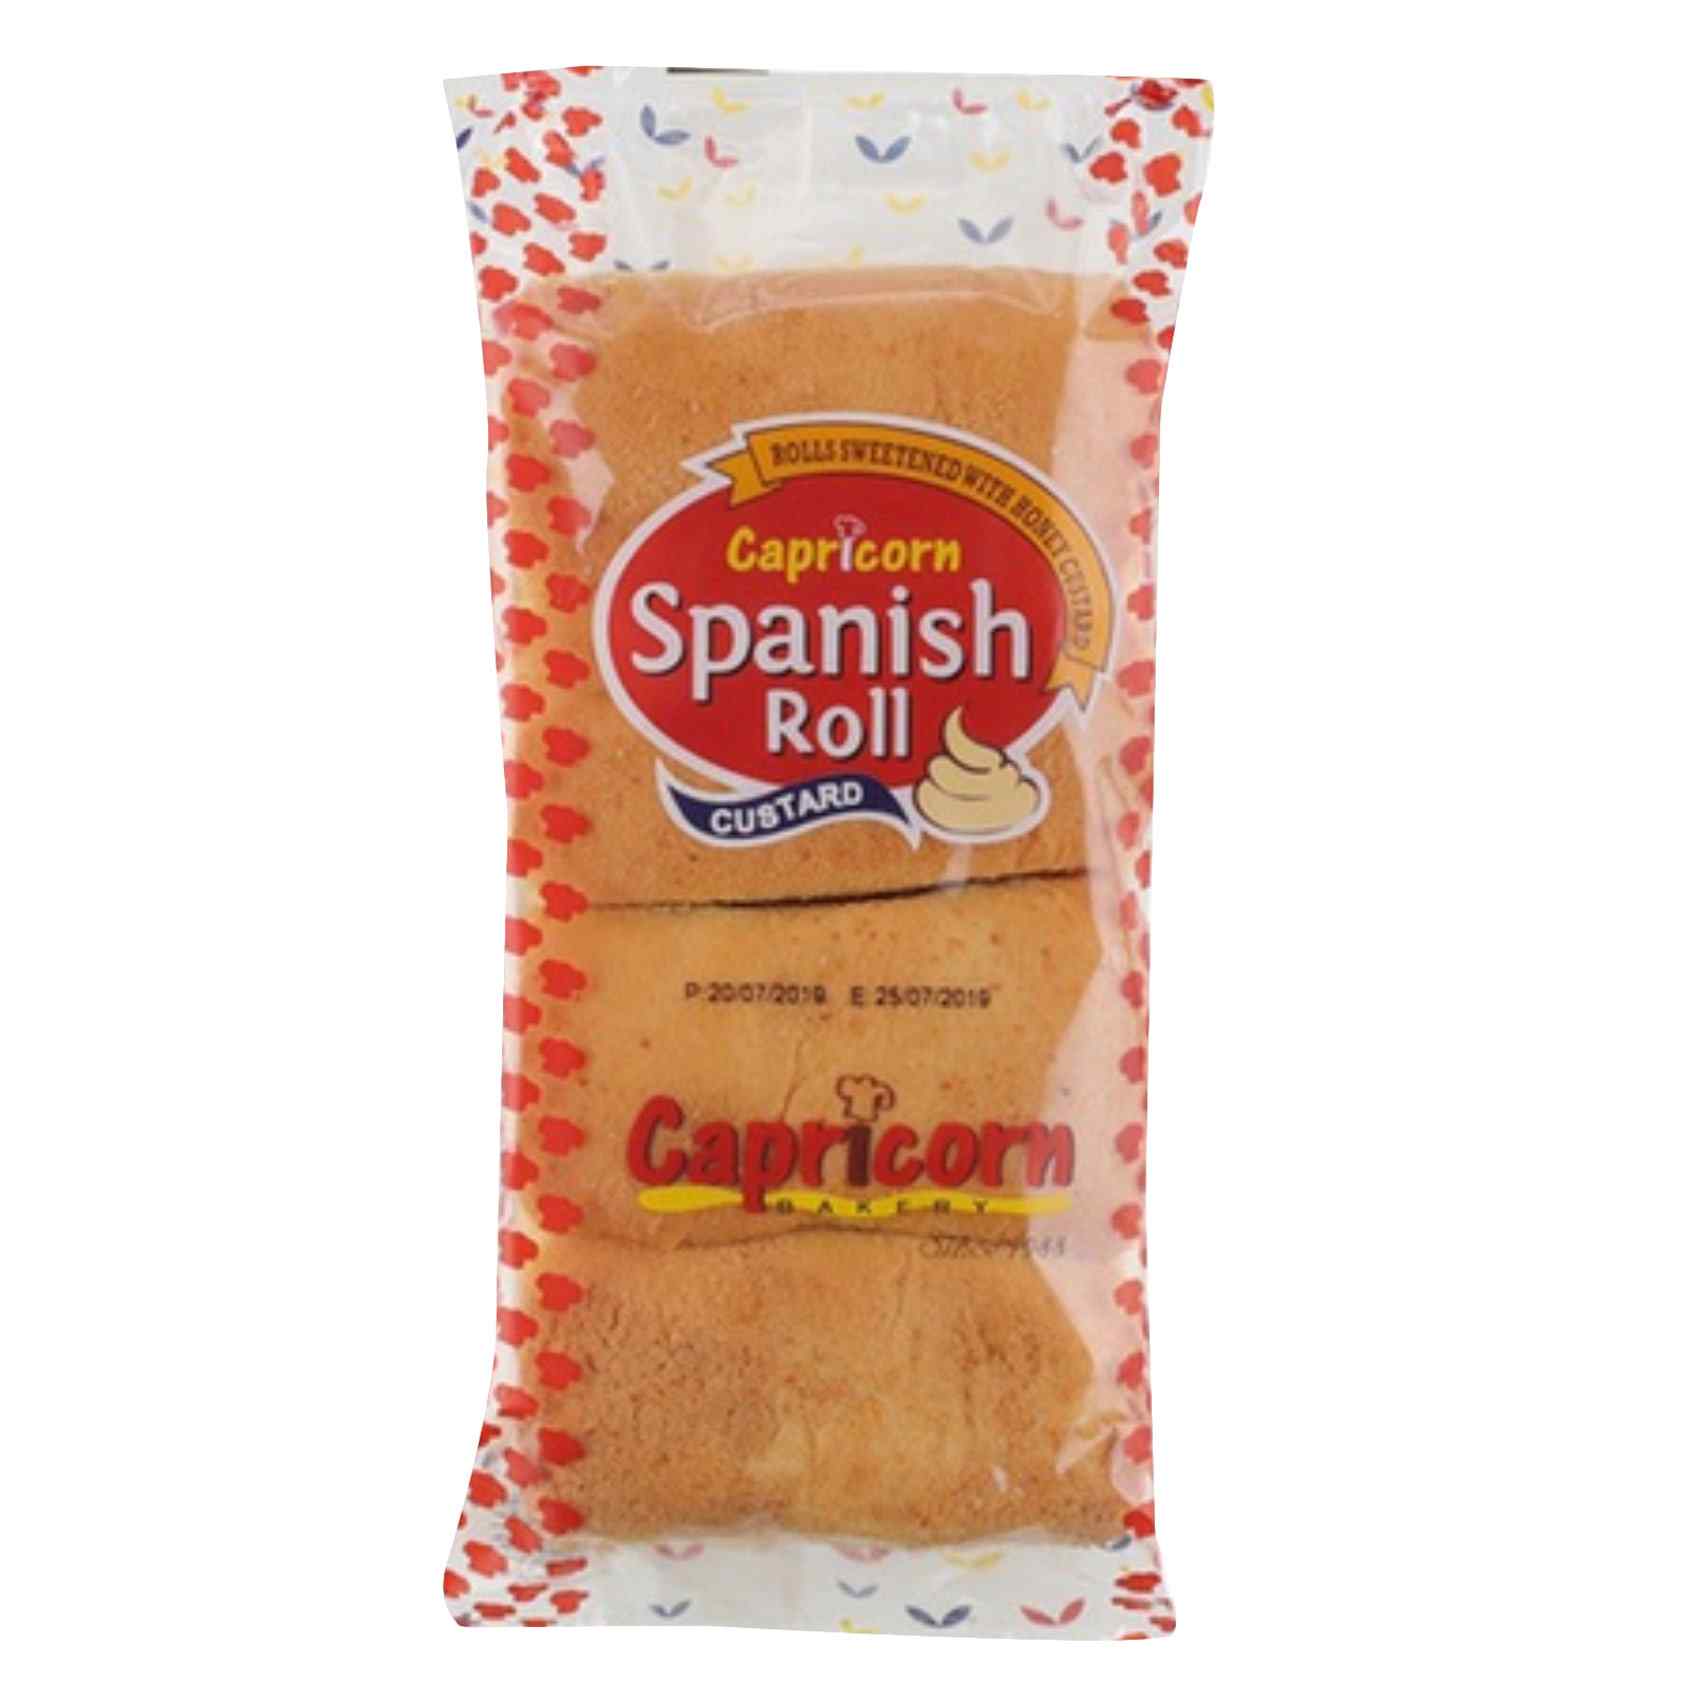 كابريكورن لفات خبز كاسترد إسباني